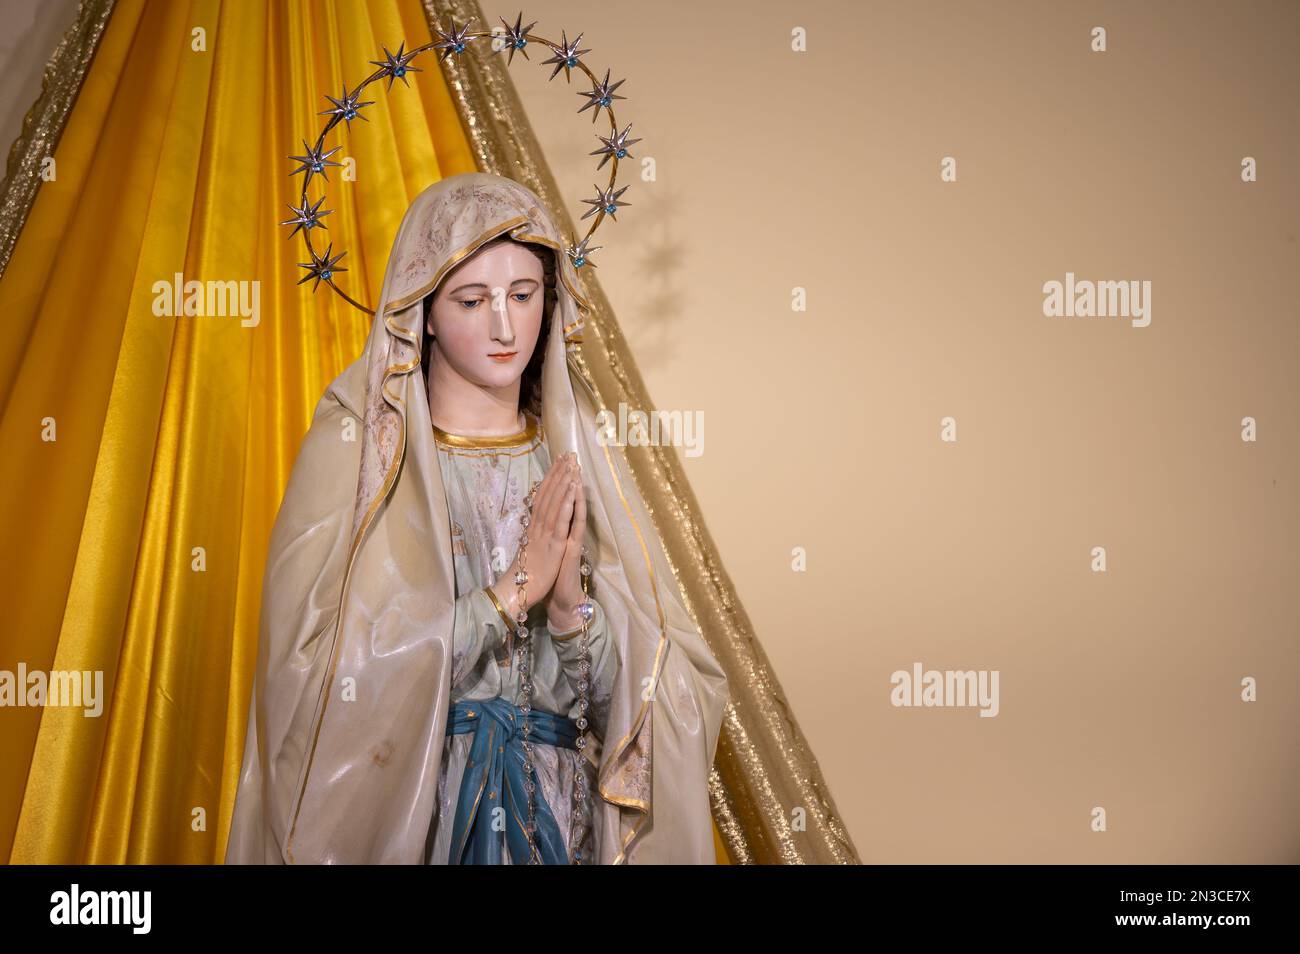 Statua della Vergine Maria, la Regina della Pace, nella chiesa di San Giacomo durante il periodo pasquale a Medjugorje, Bosnia-Erzegovina. Foto Stock